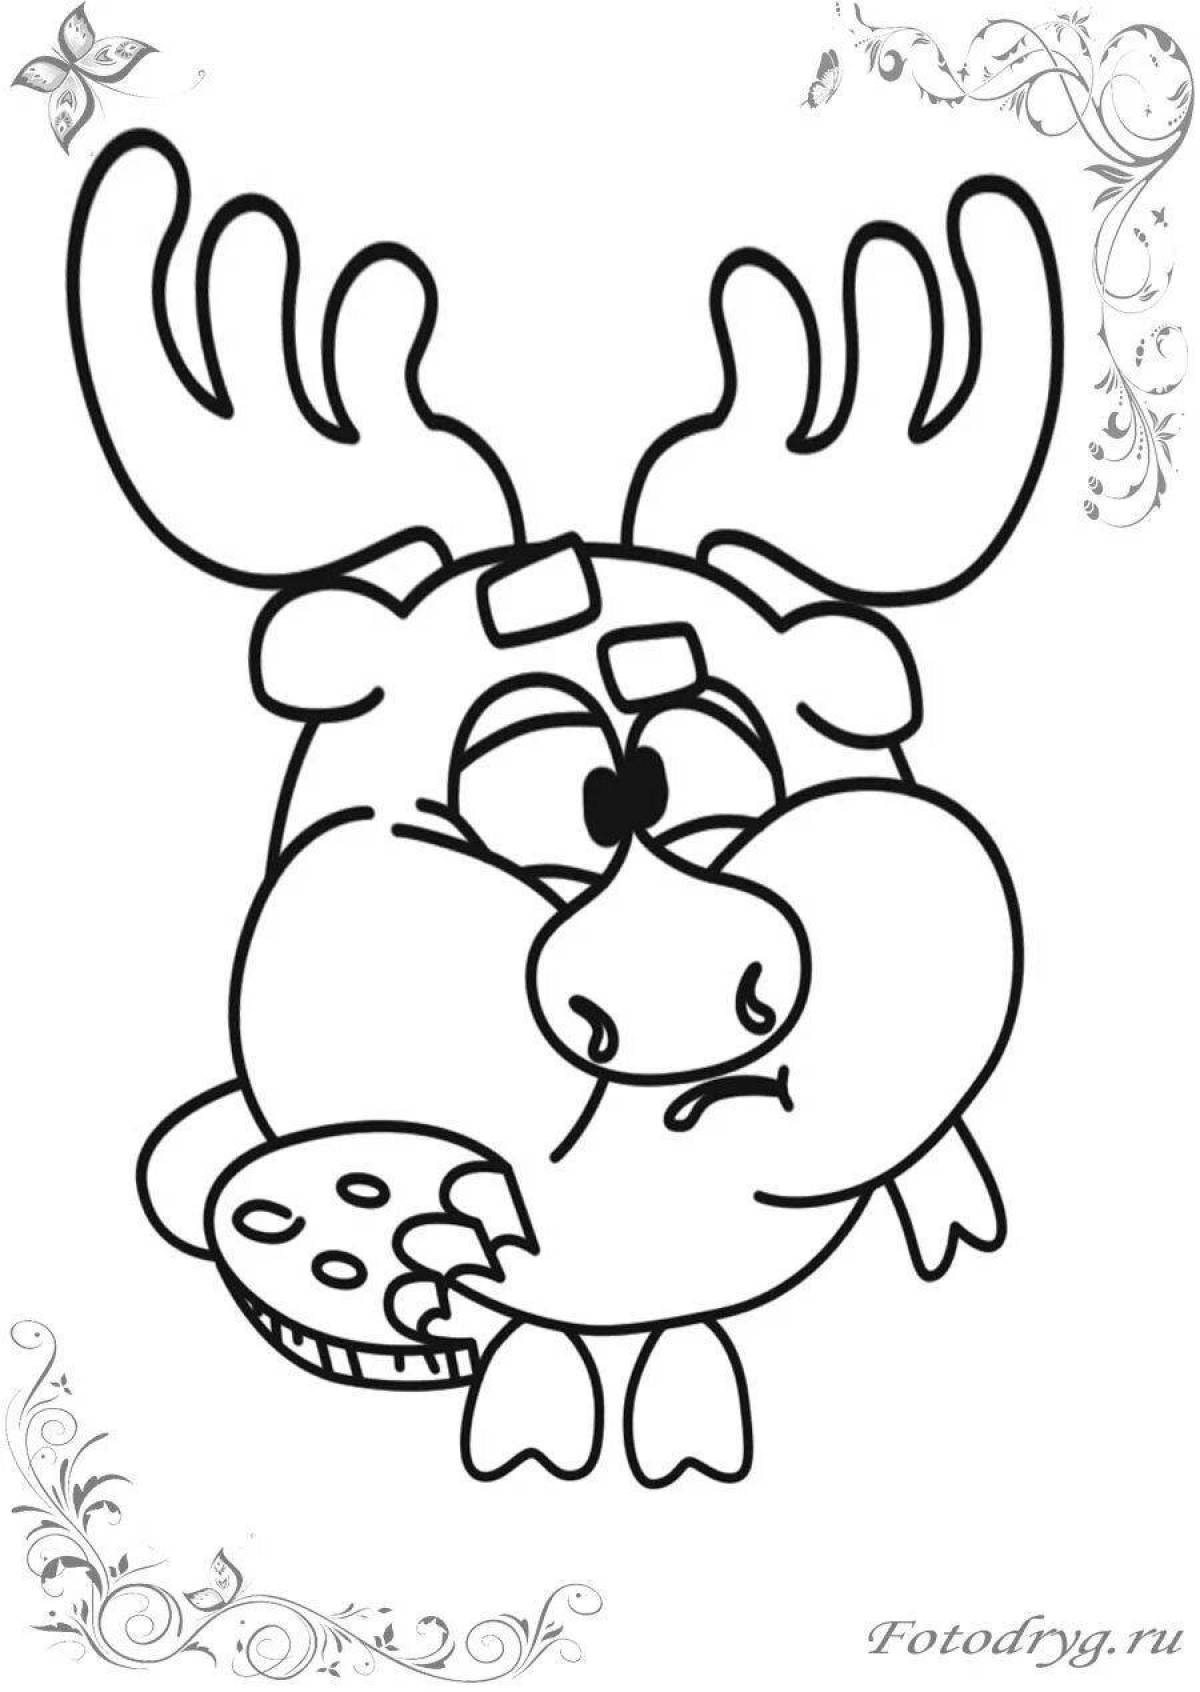 Magic coloring Smeshariki moose